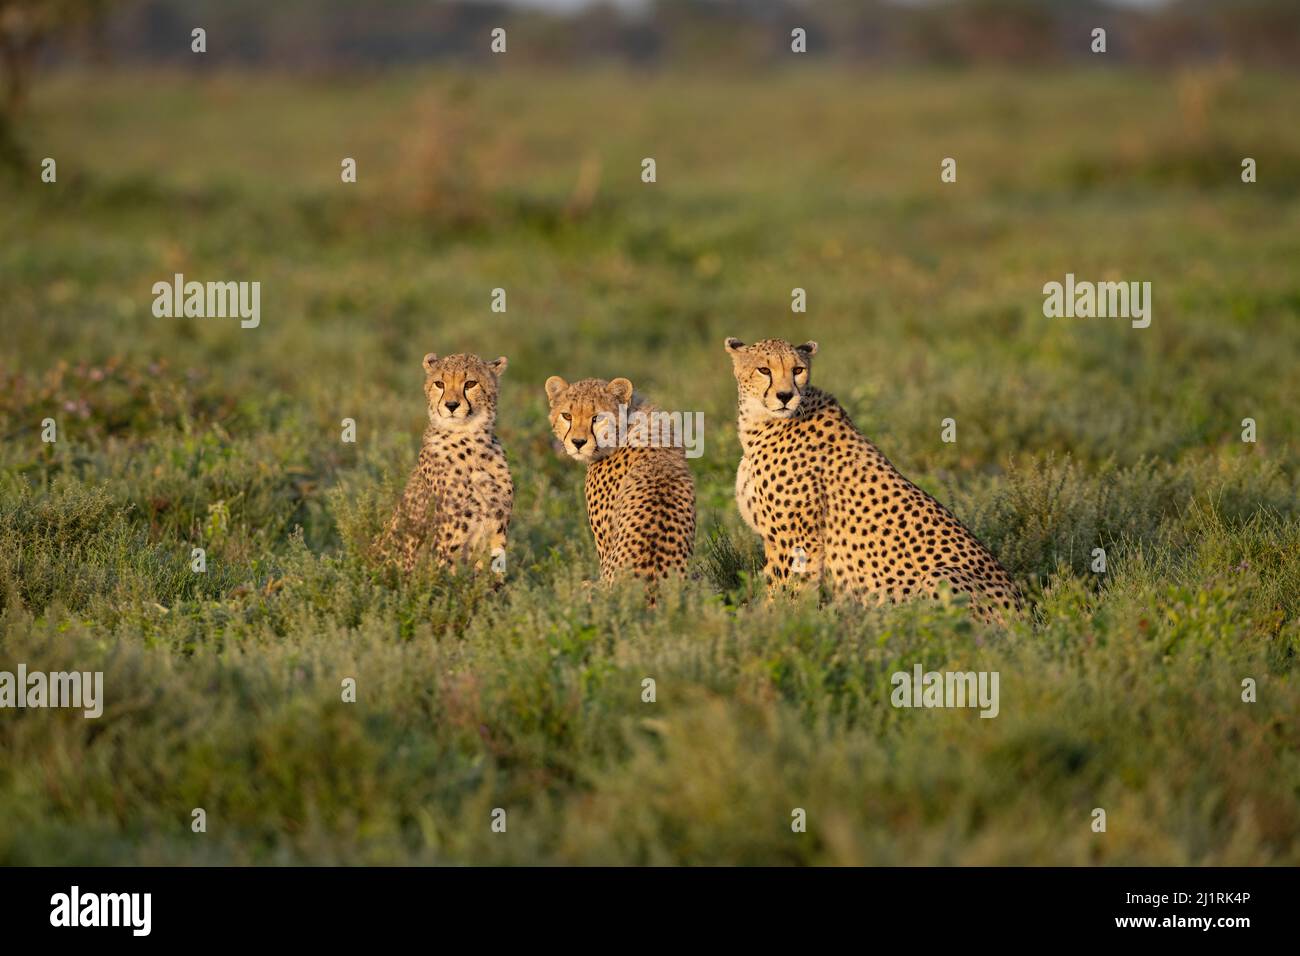 Cheetah Family, Tanzania Stock Photo